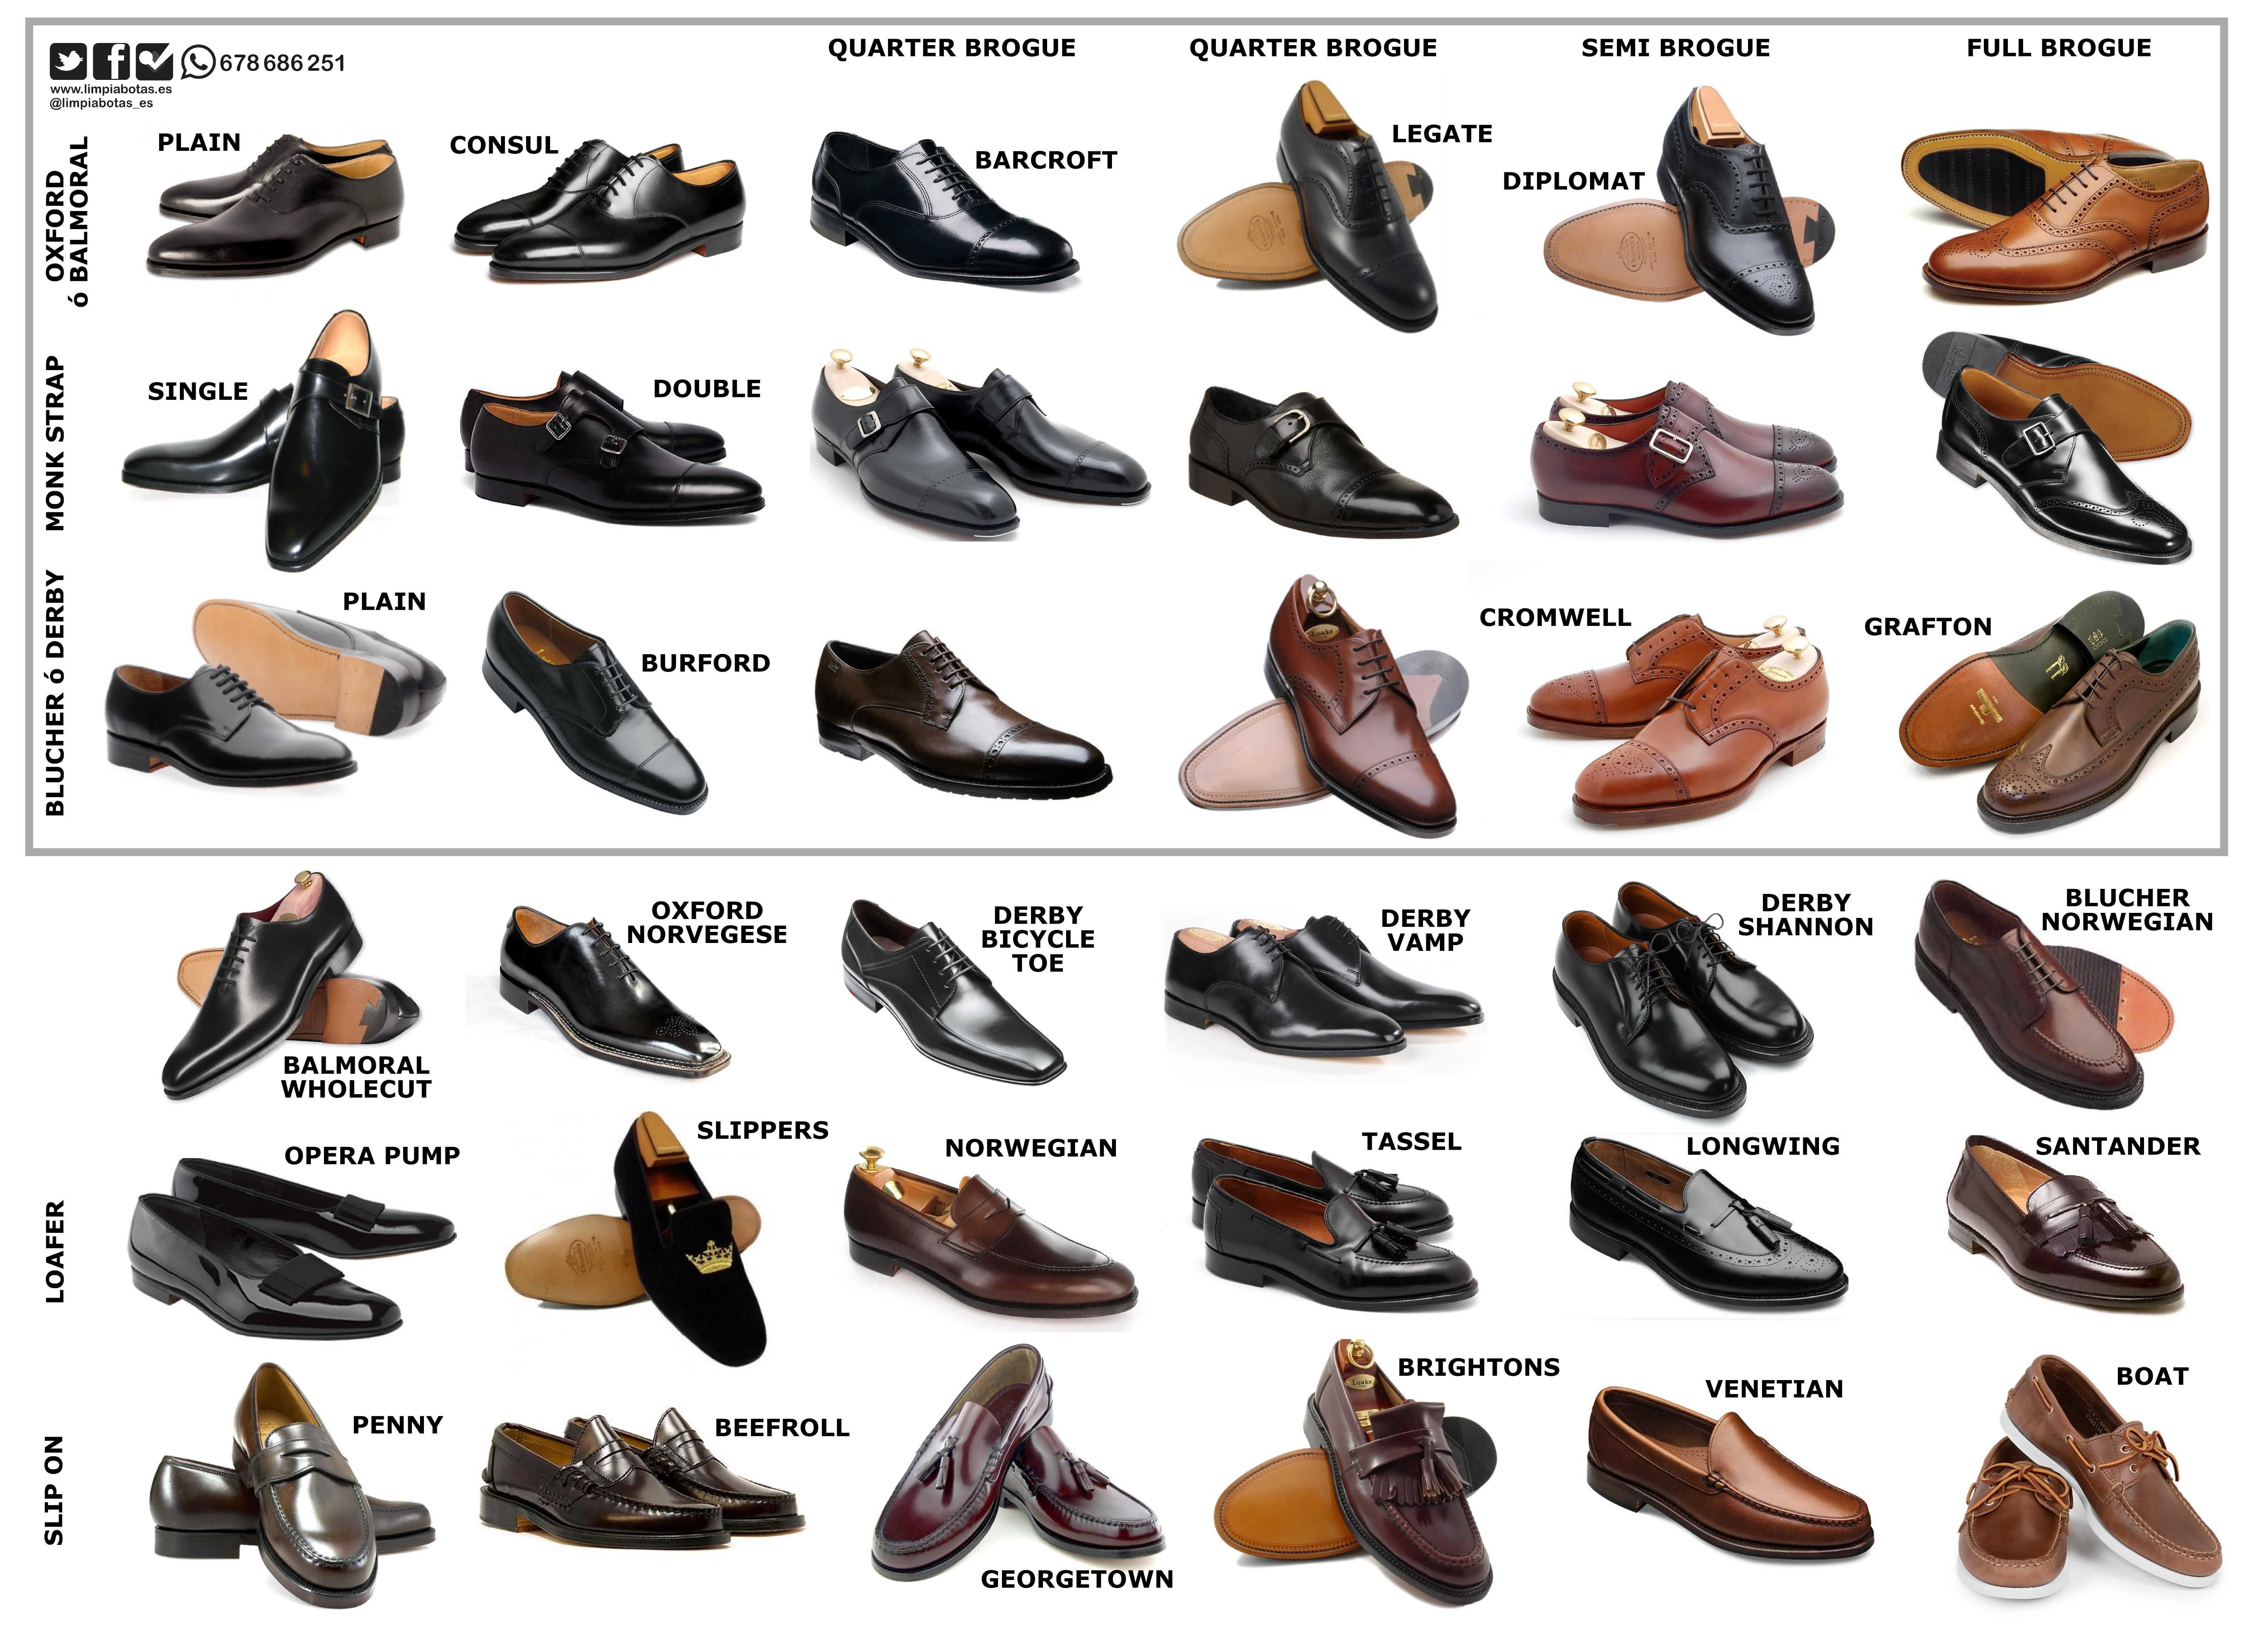 Название моделей обуви